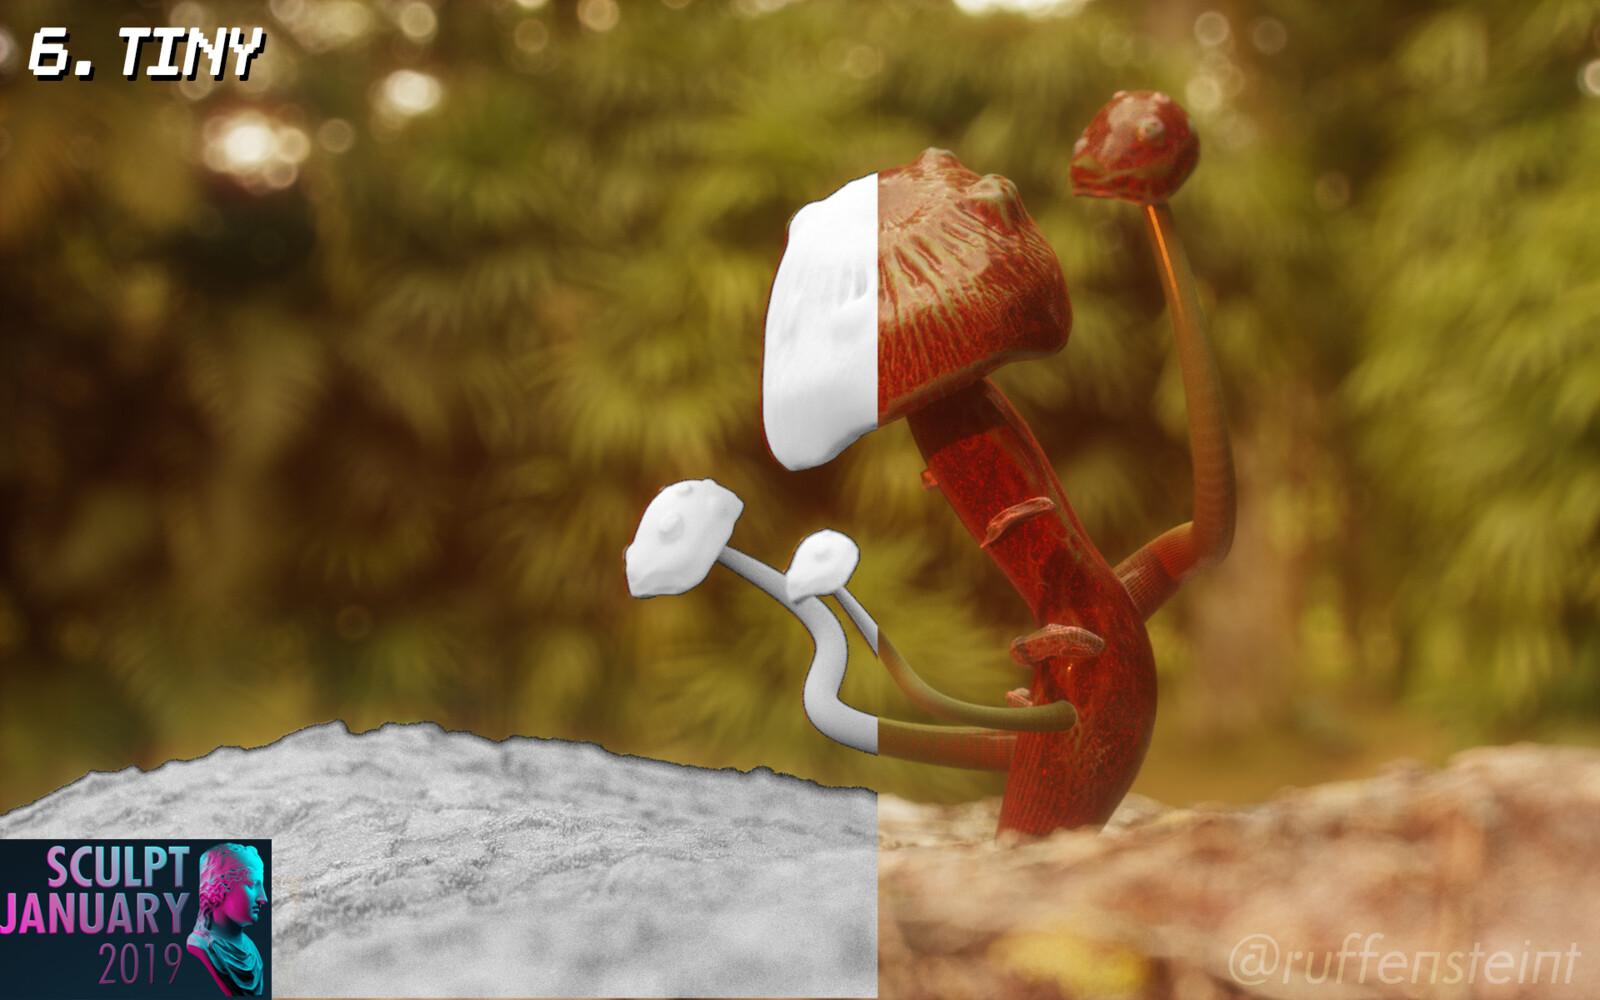 Attempt at a mushroom

Blender Sculpt, octane render.